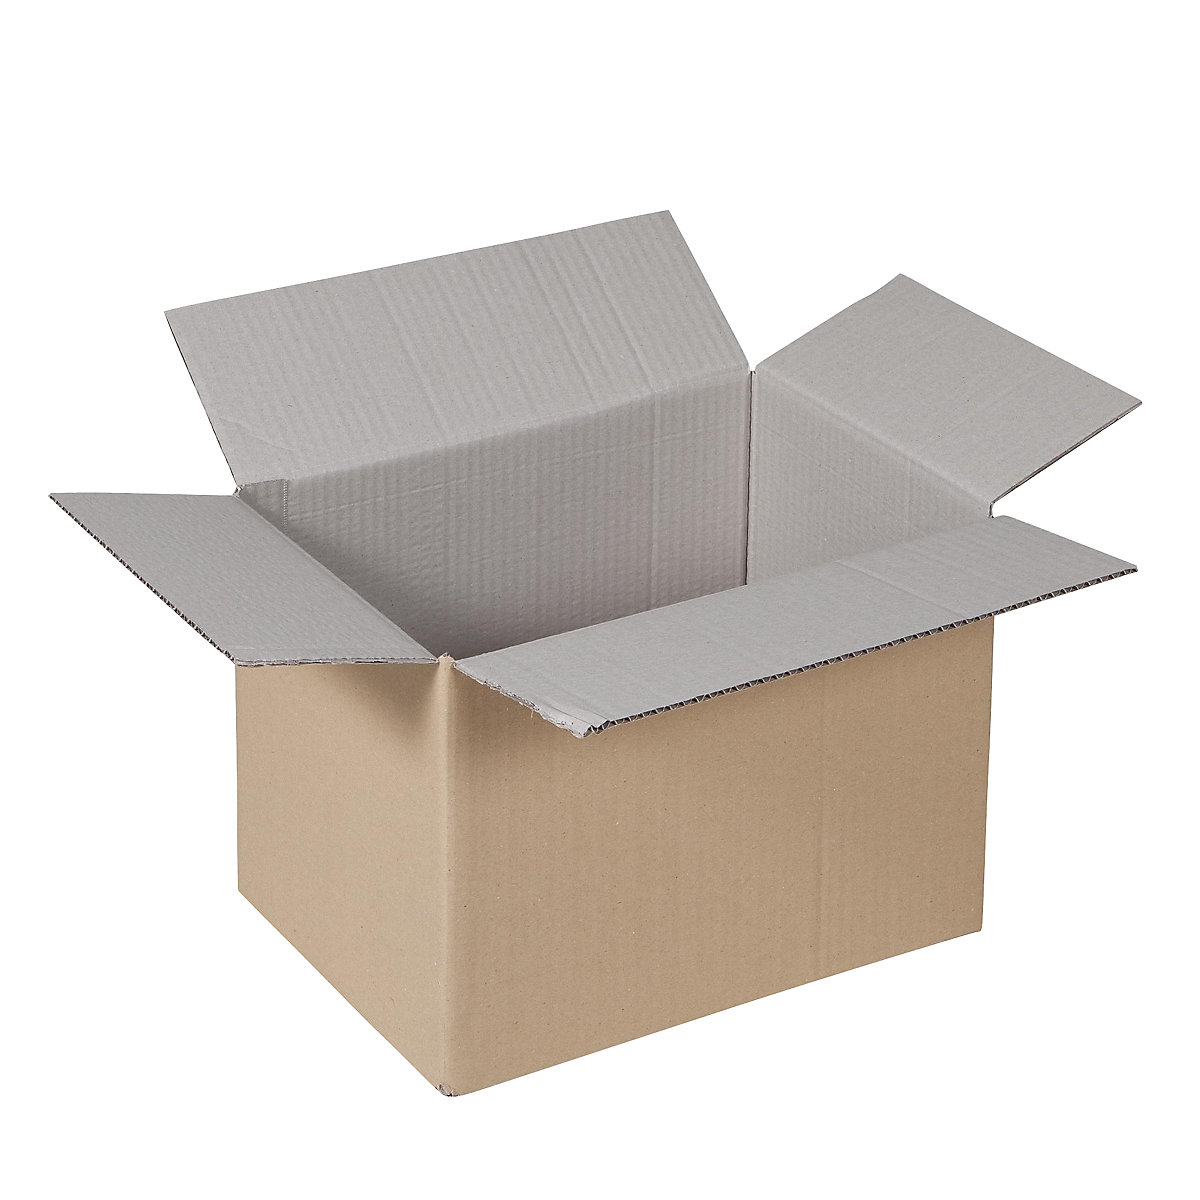 Sklopiva kartonska kutija, FEFCO 0201, od 1-valnog kartona, unutarnje dimenzije 320 x 250 x 200 mm, pak. 50 kom.-22